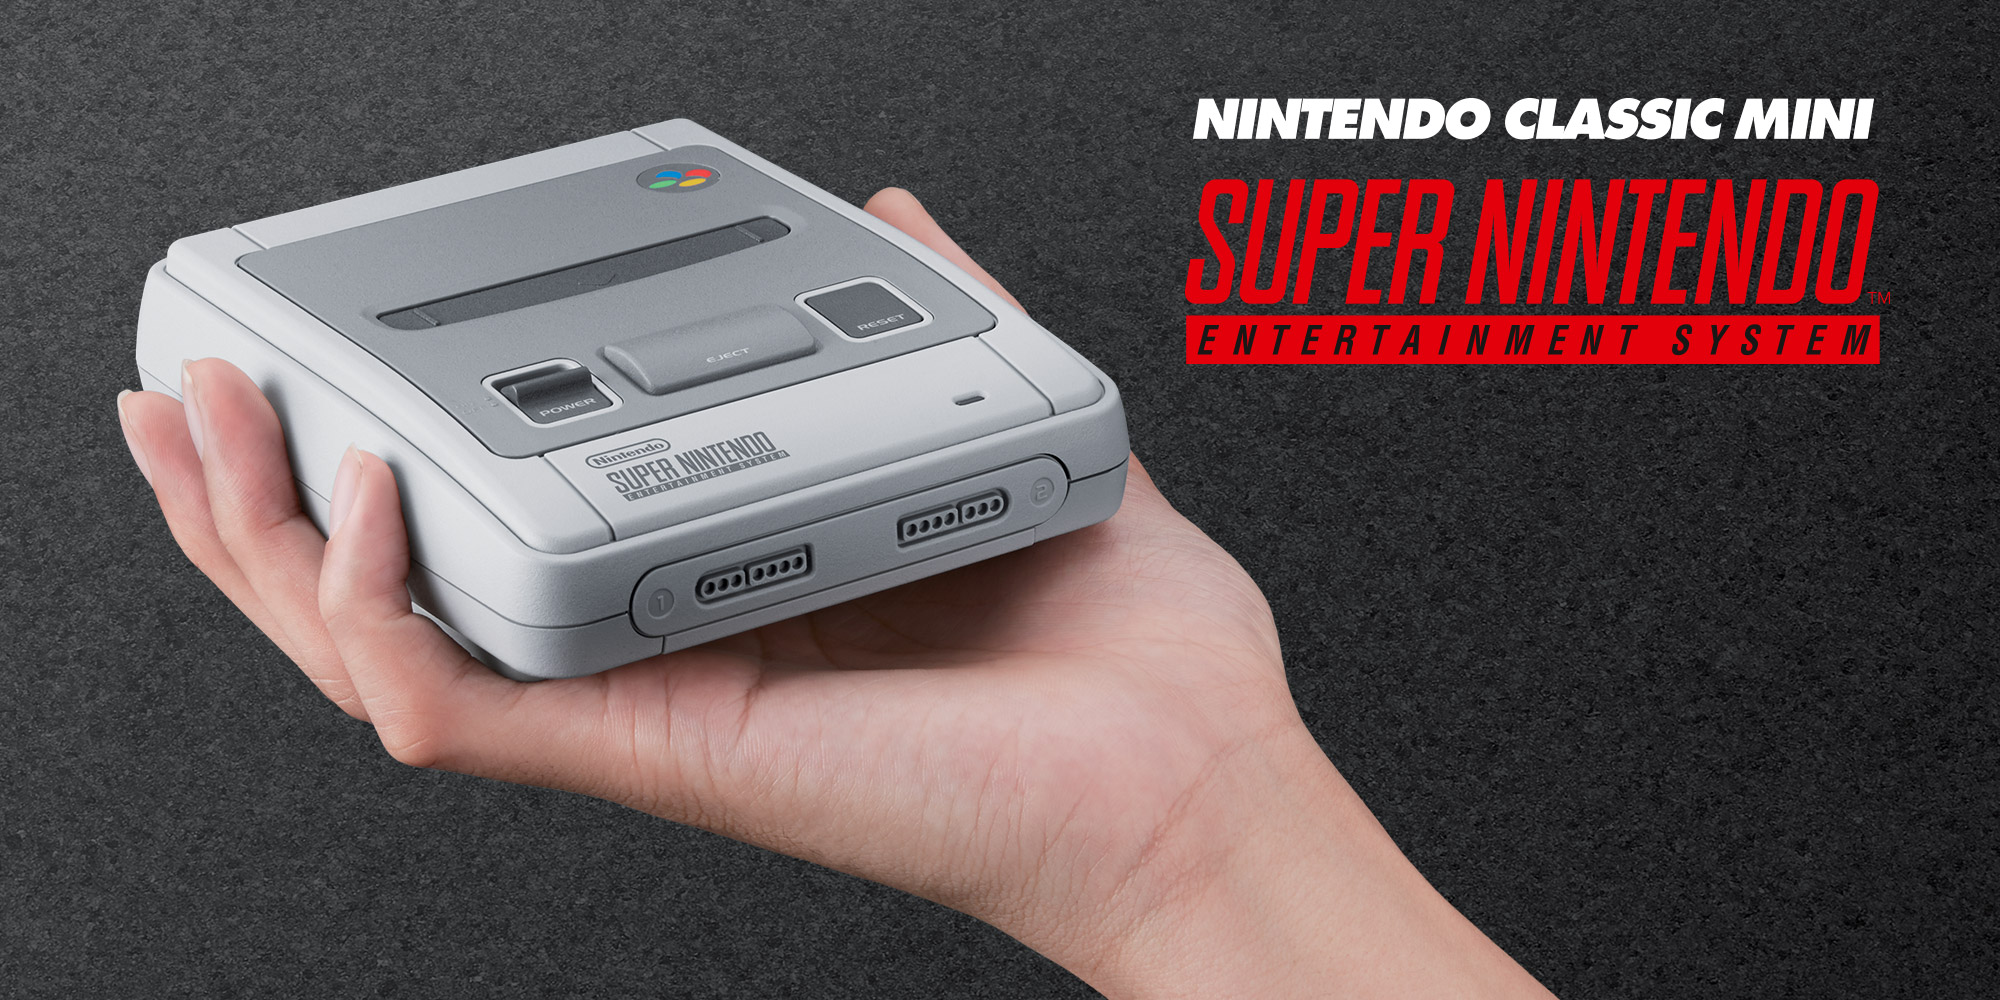 Disponibile la modifica per Nintendo Classic Mini: Super Nintendo Entertainment System (SNES Mini): ecco la guida per sapere come aggiungere altri giochi!